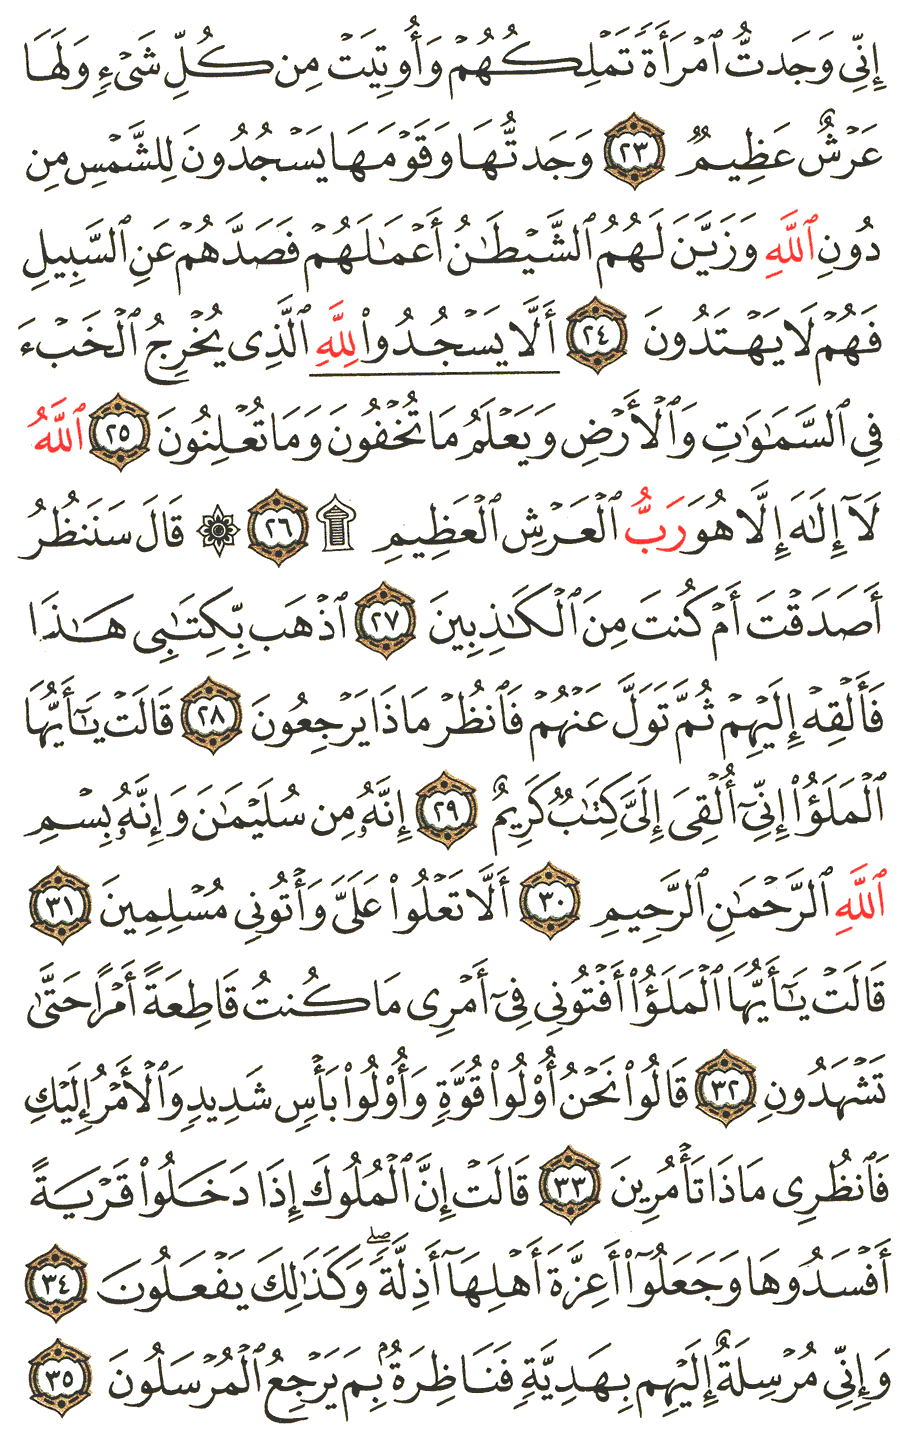 الصفحة 379 من القرآن الكريم